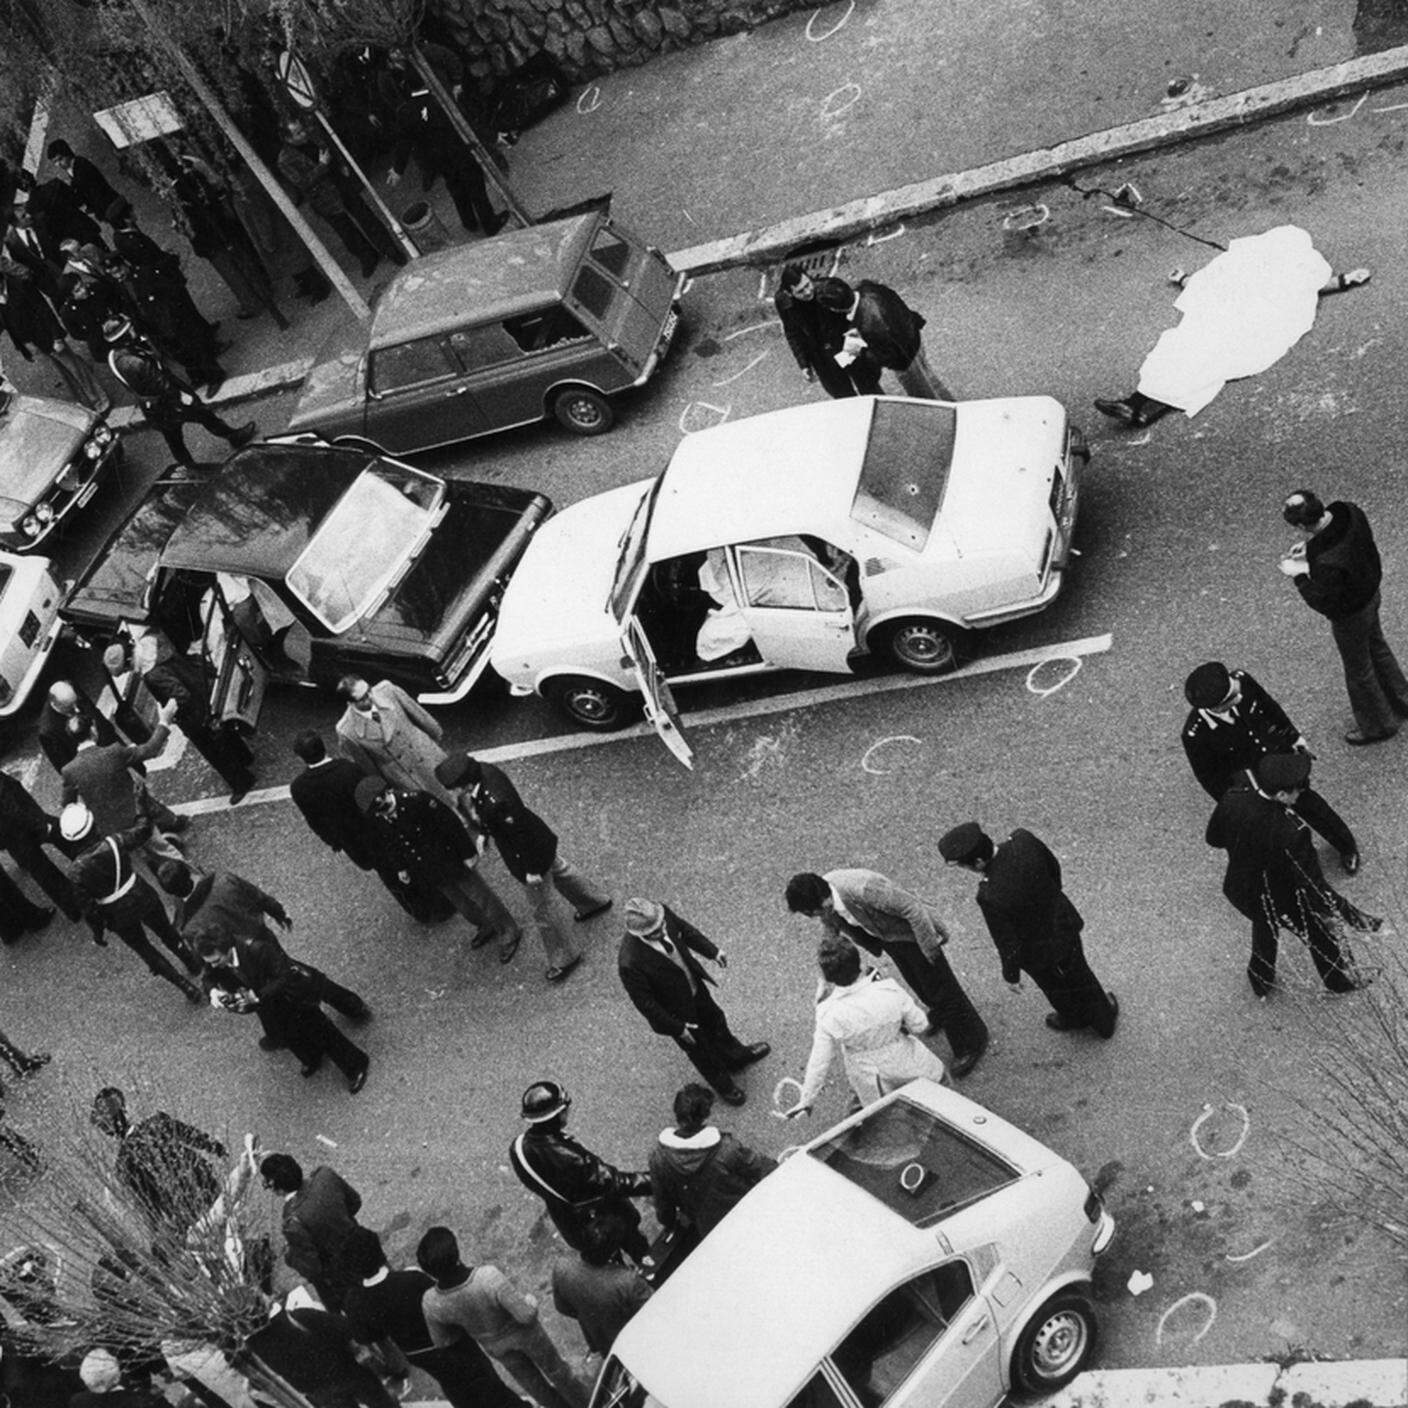 La strage di via Fani. Per rapire Aldo Moro le BR uccisero i 5 uomini della scorta